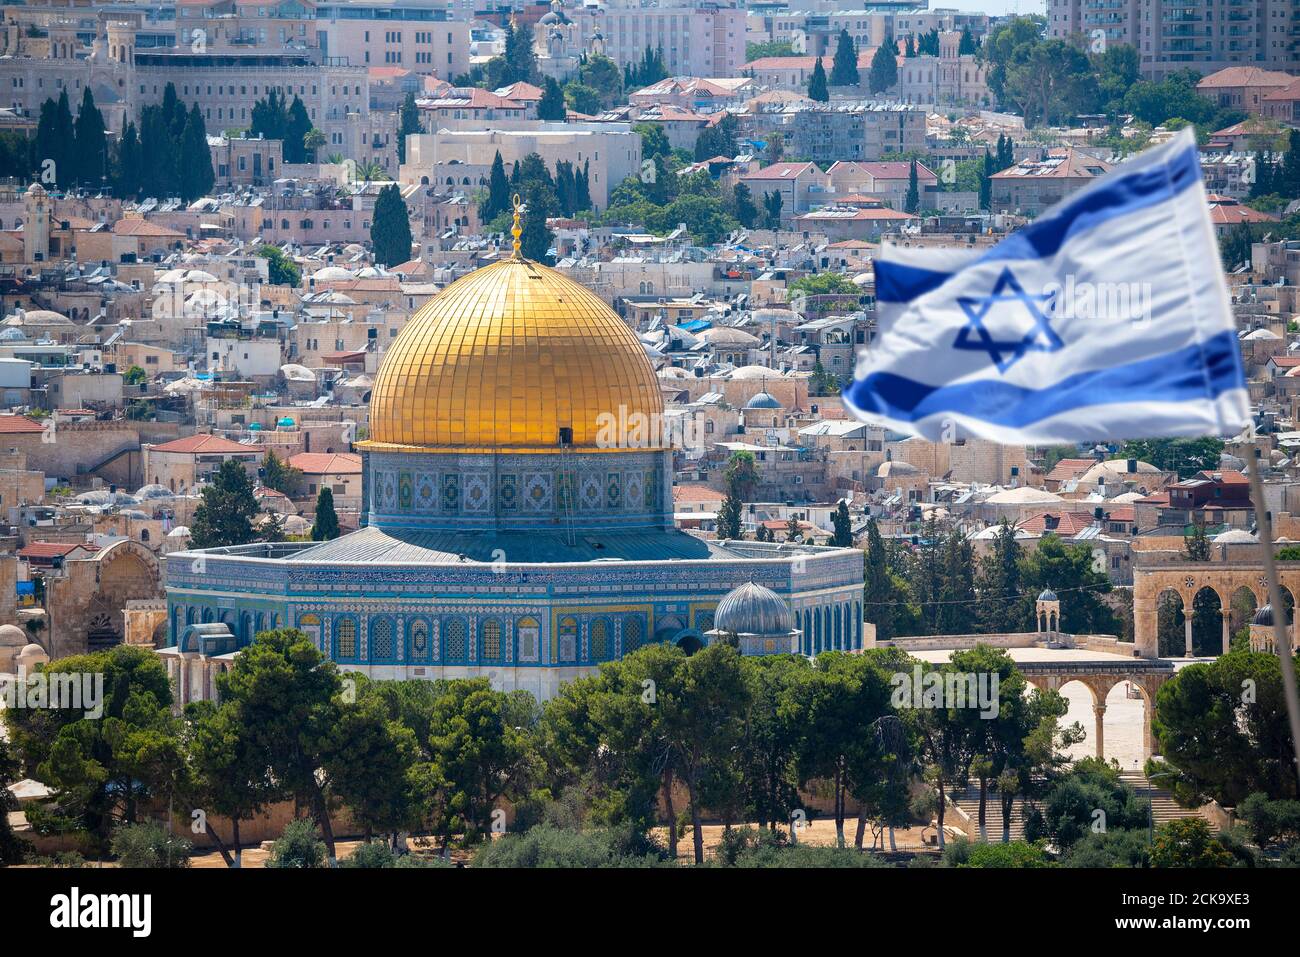 Un drapeau israélien souffle dans le vent de la montagne des olives surplombant la vieille ville de Jérusalem, Israël. Jérusalem est la ville la plus visitée d'Israël Banque D'Images